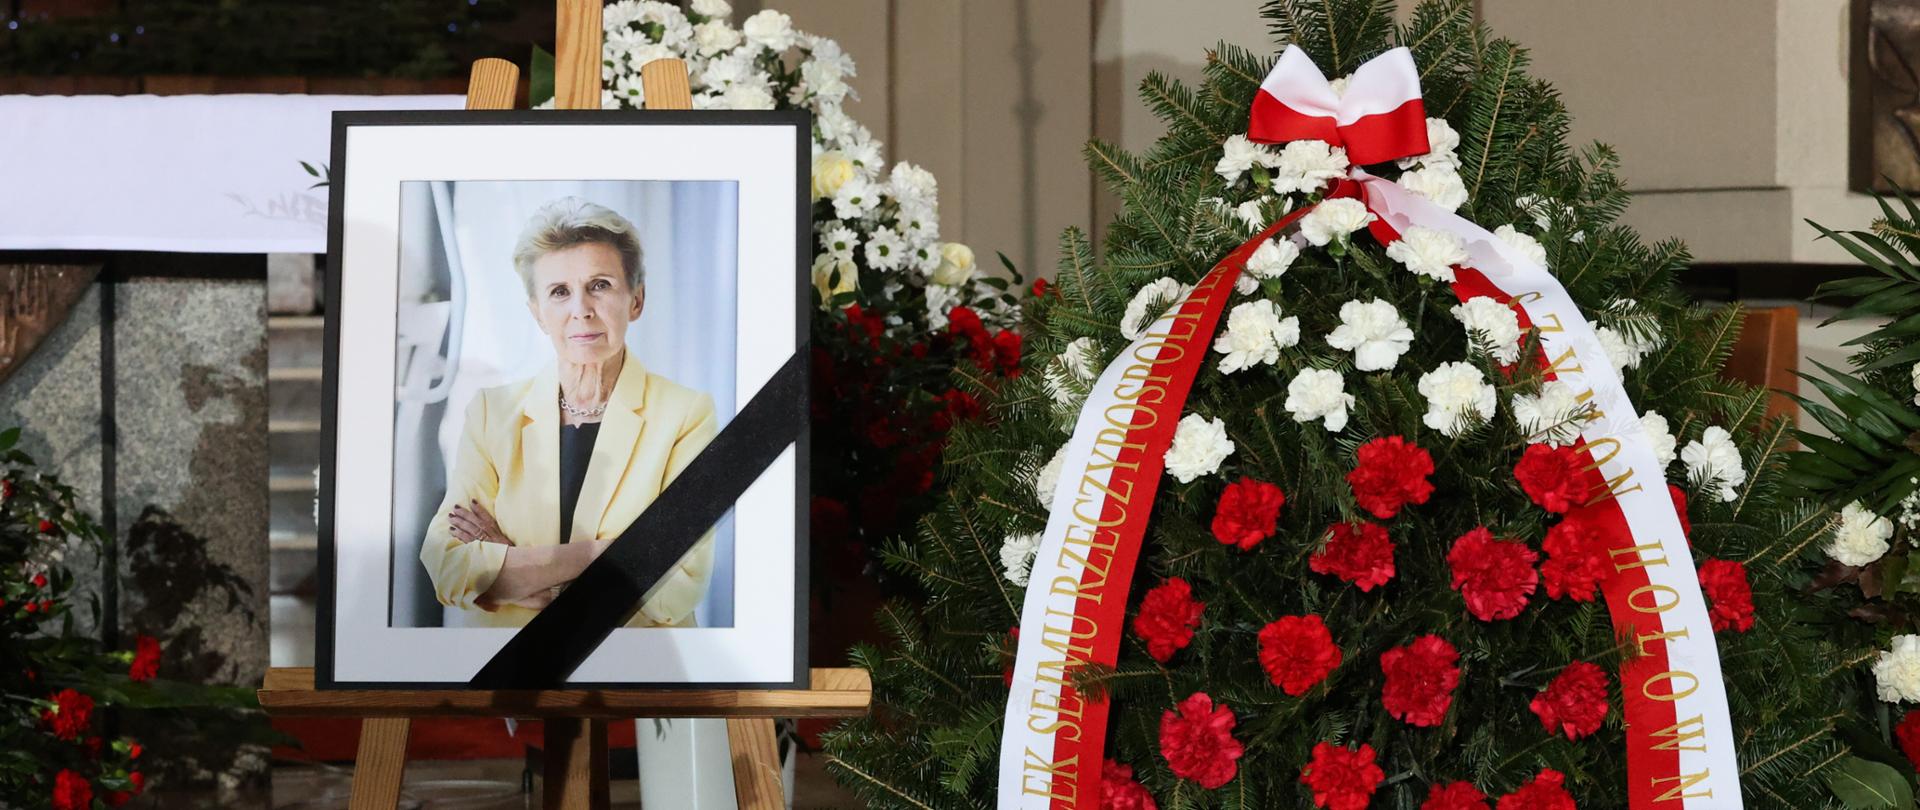 Ostatnie pożegnanie Iwony Śledzińskiej-Katarasińskiej fot. Marian Zubrzycki/PAP